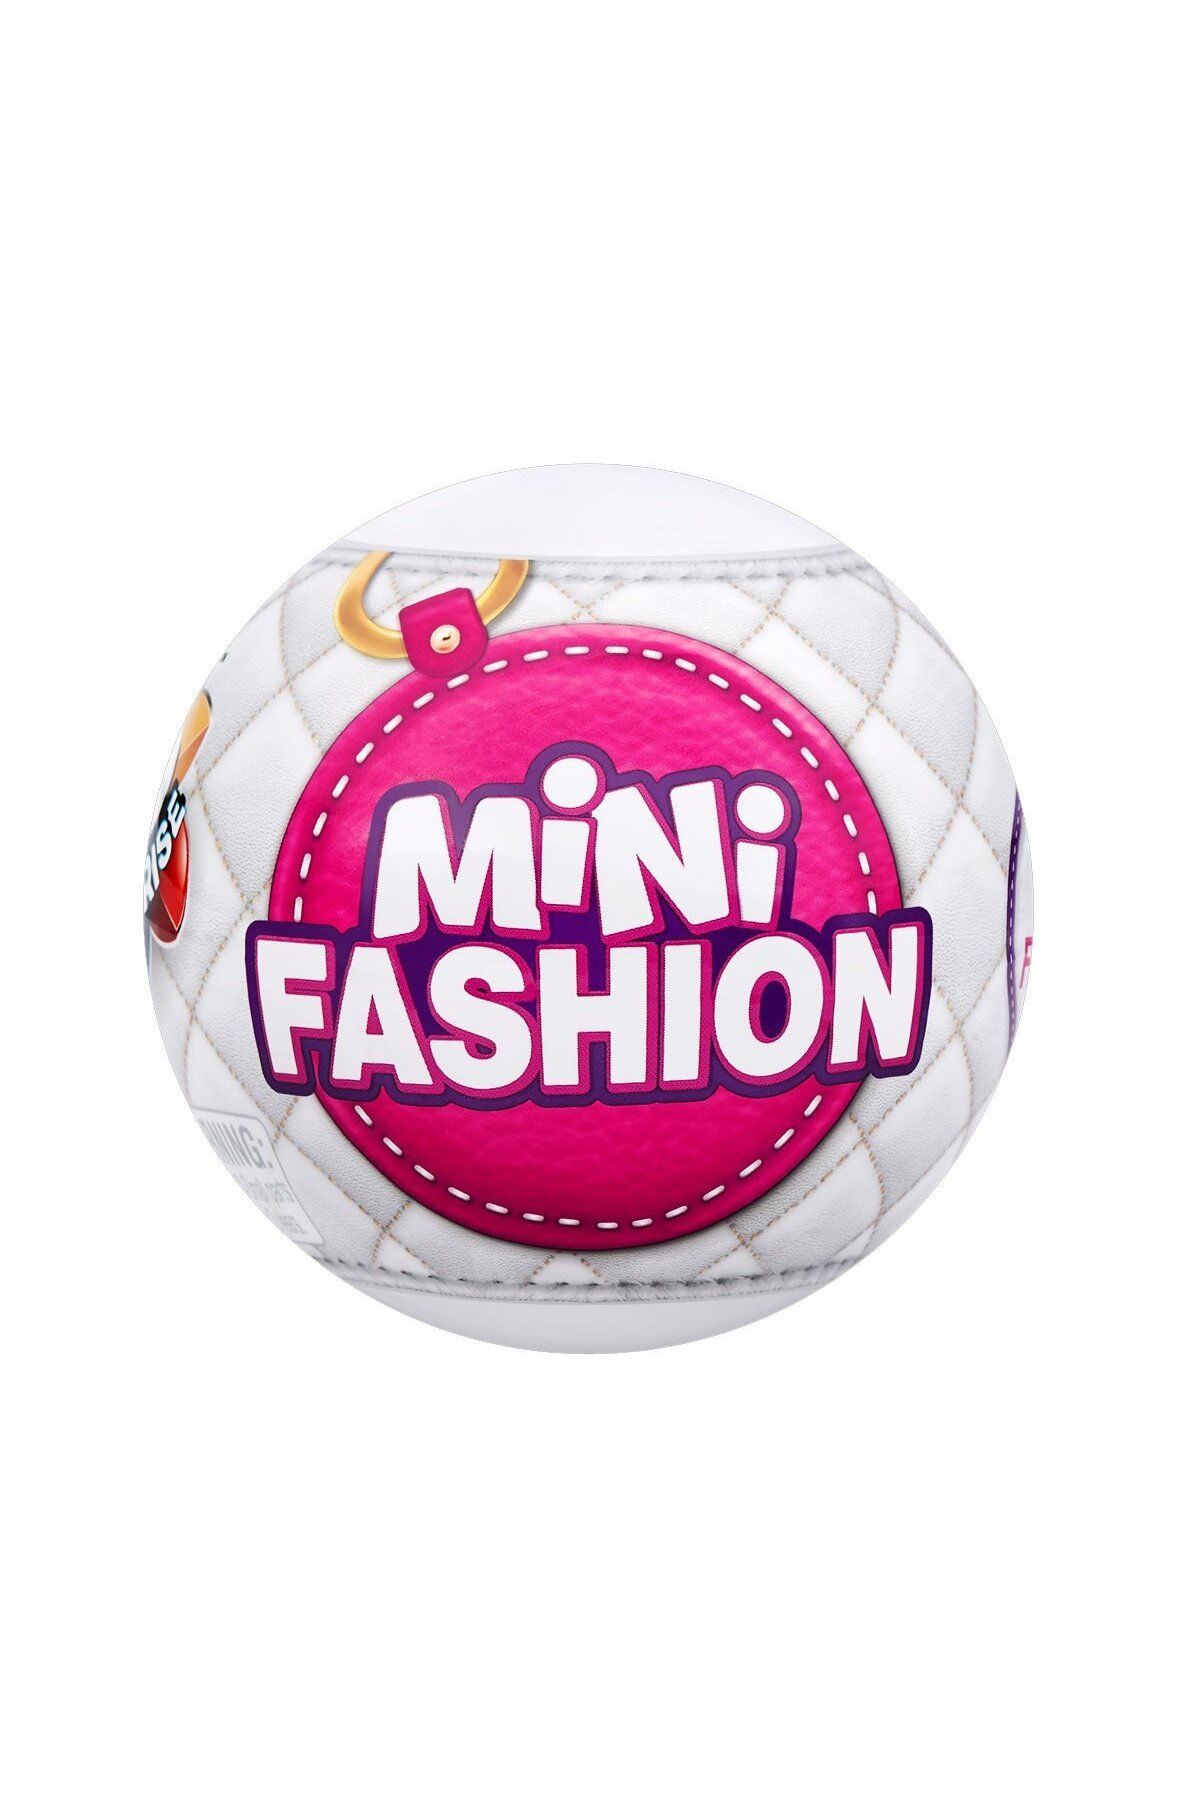 GIOCHI PREZIOSI Fabbatoys Mini Fashion S1 Moda Surpriz Paket